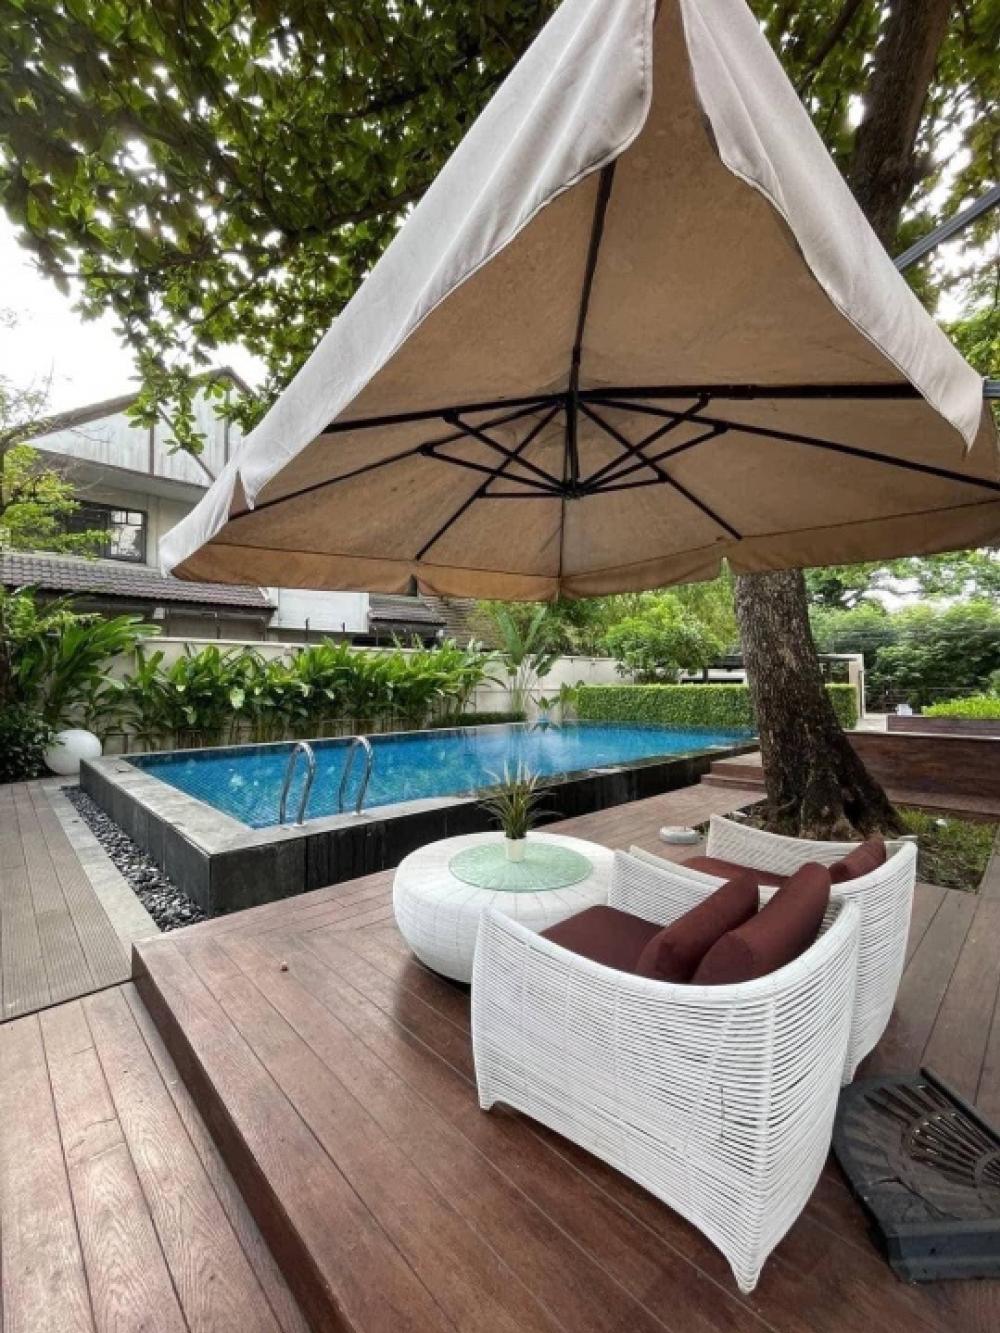 ขายบ้านสุขุมวิท อโศก ทองหล่อ : Rental/ Selling : Villa House In Thonglor with Private Pool , 5 Beds 5 baths ,163 sqw, 459 sqm ,Parking 4+4🔥🔥 Rental : 600,000 THB / Month🔥🔥 🔥🔥 Selling : 220,000,000 THB 🔥🔥 #houseforrentbangkok #houseforsellbangkok#realeastatethailand#condoforentbangkok#c